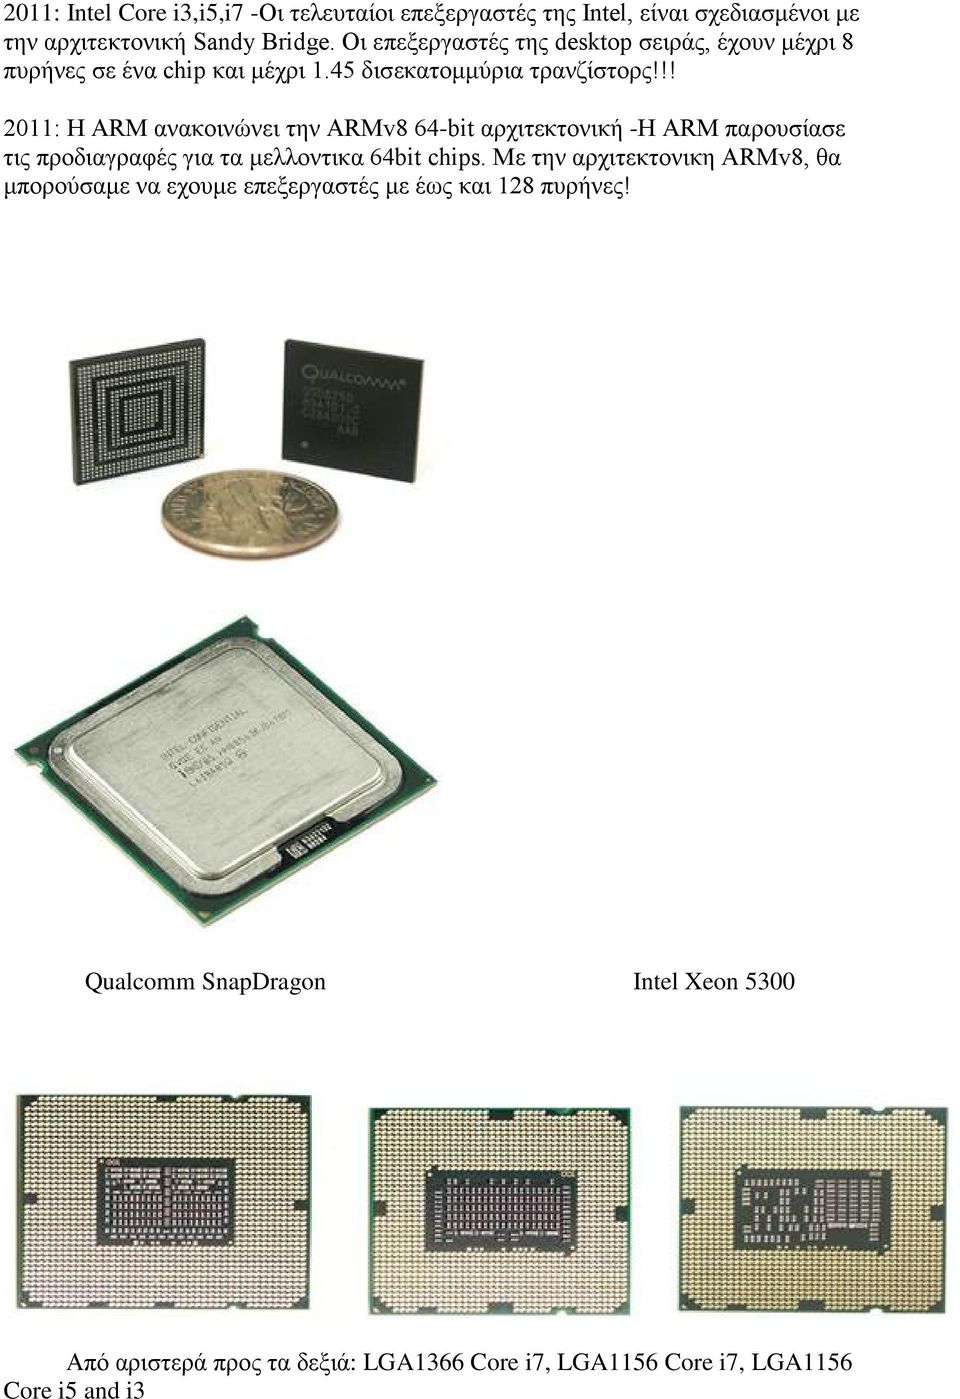 !! 2011: Η ARM ανακοινώνει την ARMv8 64-bit αρχιτεκτονική -Η ARM παρουσίασε τις προδιαγραφές για τα μελλοντικα 64bit chips.